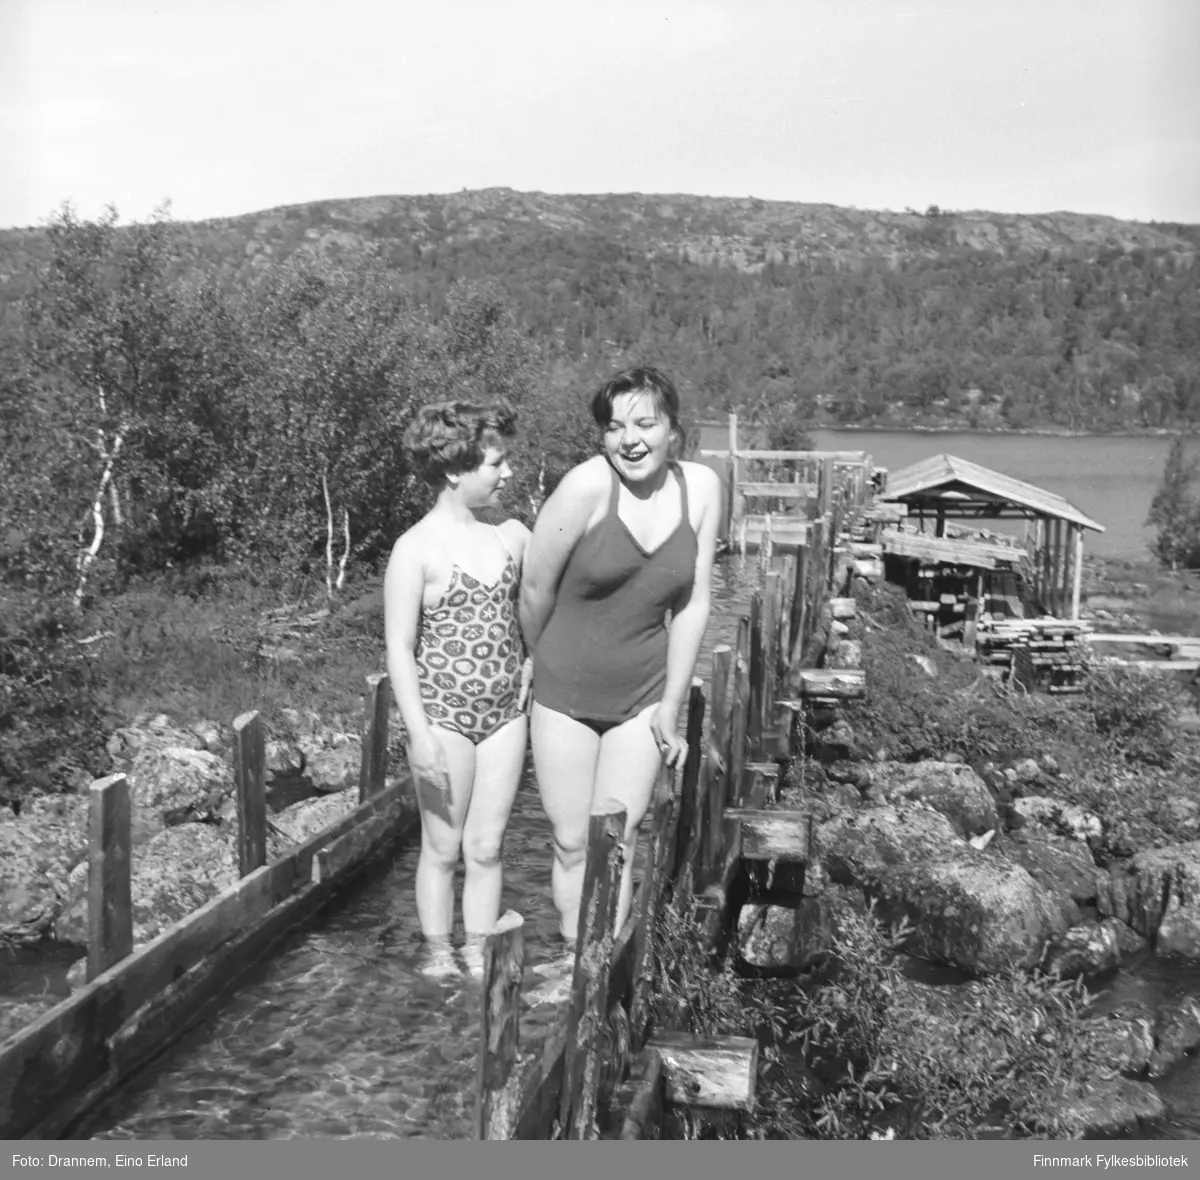 To jenter iført badedrakter, fre avenstre Turid Karikoski (Drannem) og Maija Hoikka (født Gerasimoff), står i en vannrenne som går til noe som ser ut som et lite sagbruk. 